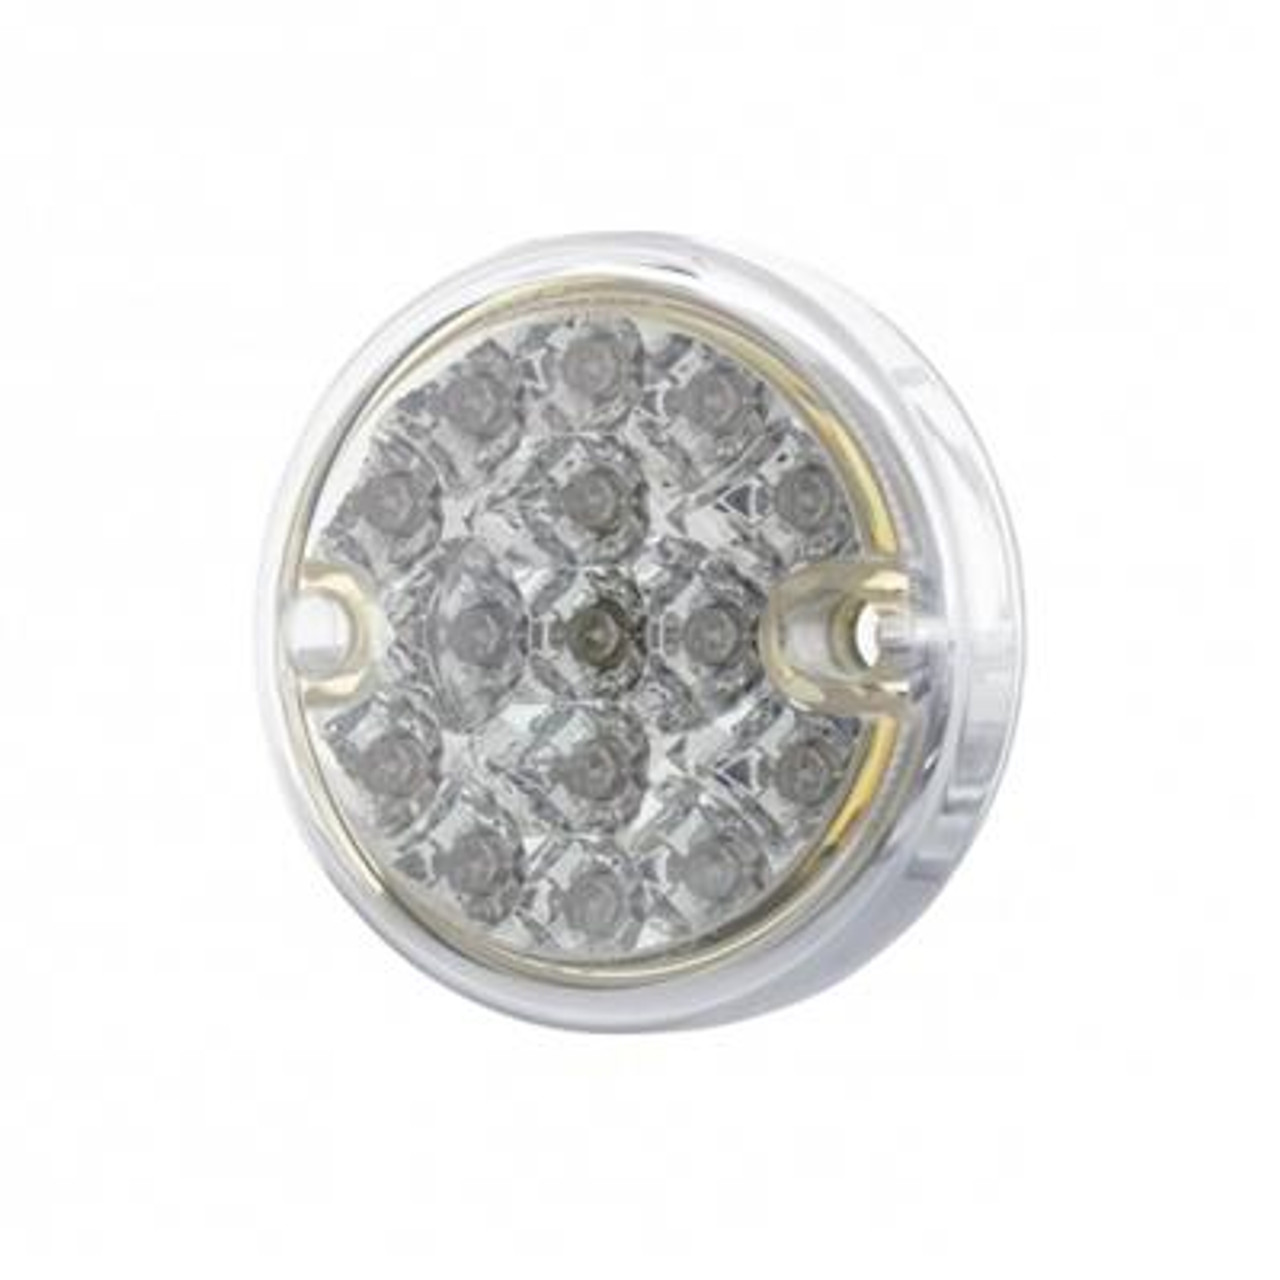 15 LED 3" Reflector Series 4 Light For Double Face Light Housing - Amber LED/Clear Lens (Bulk)